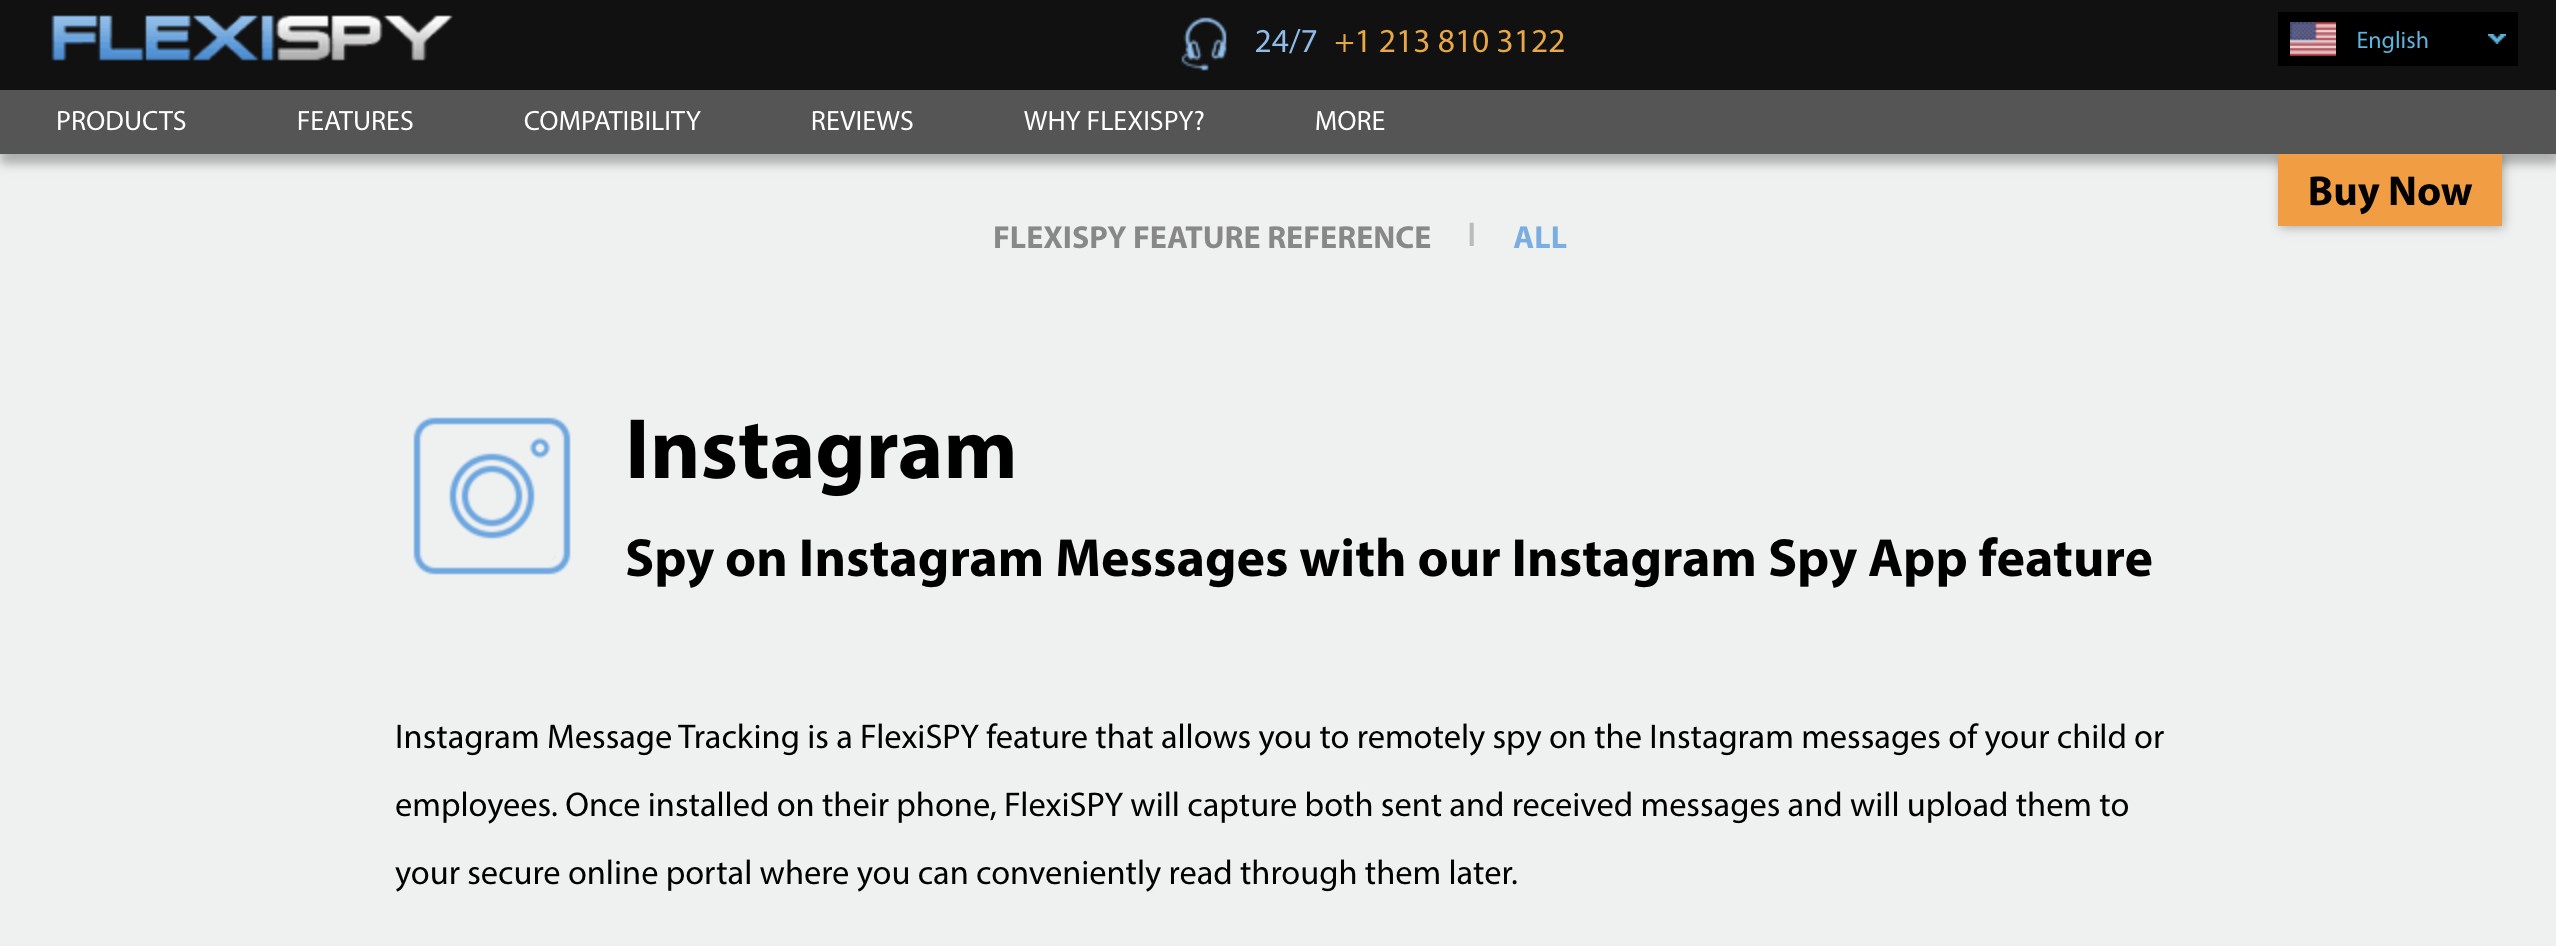 flexispy instagram spy